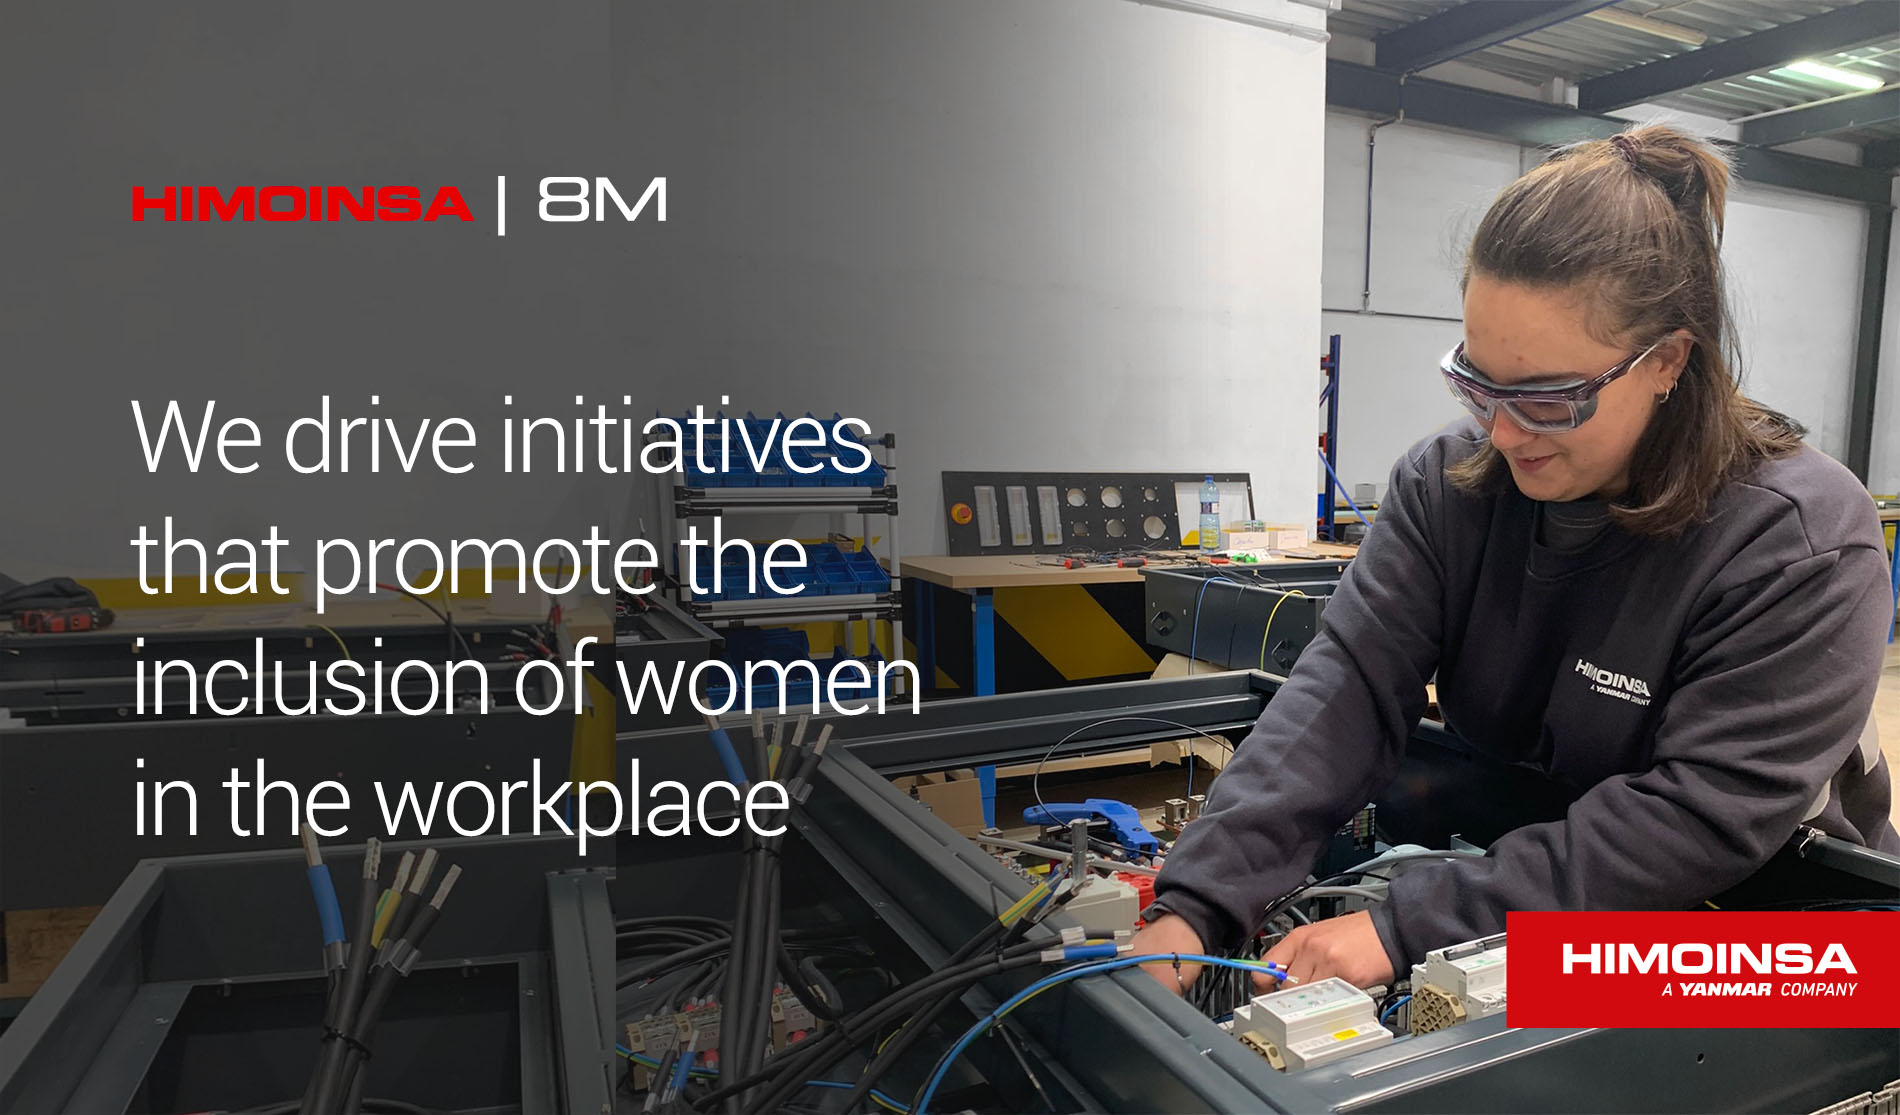 HIMOINSA colabora en proyectos e impulsa iniciativas para favorecer la inclusión de la mujer en el mundo laboral